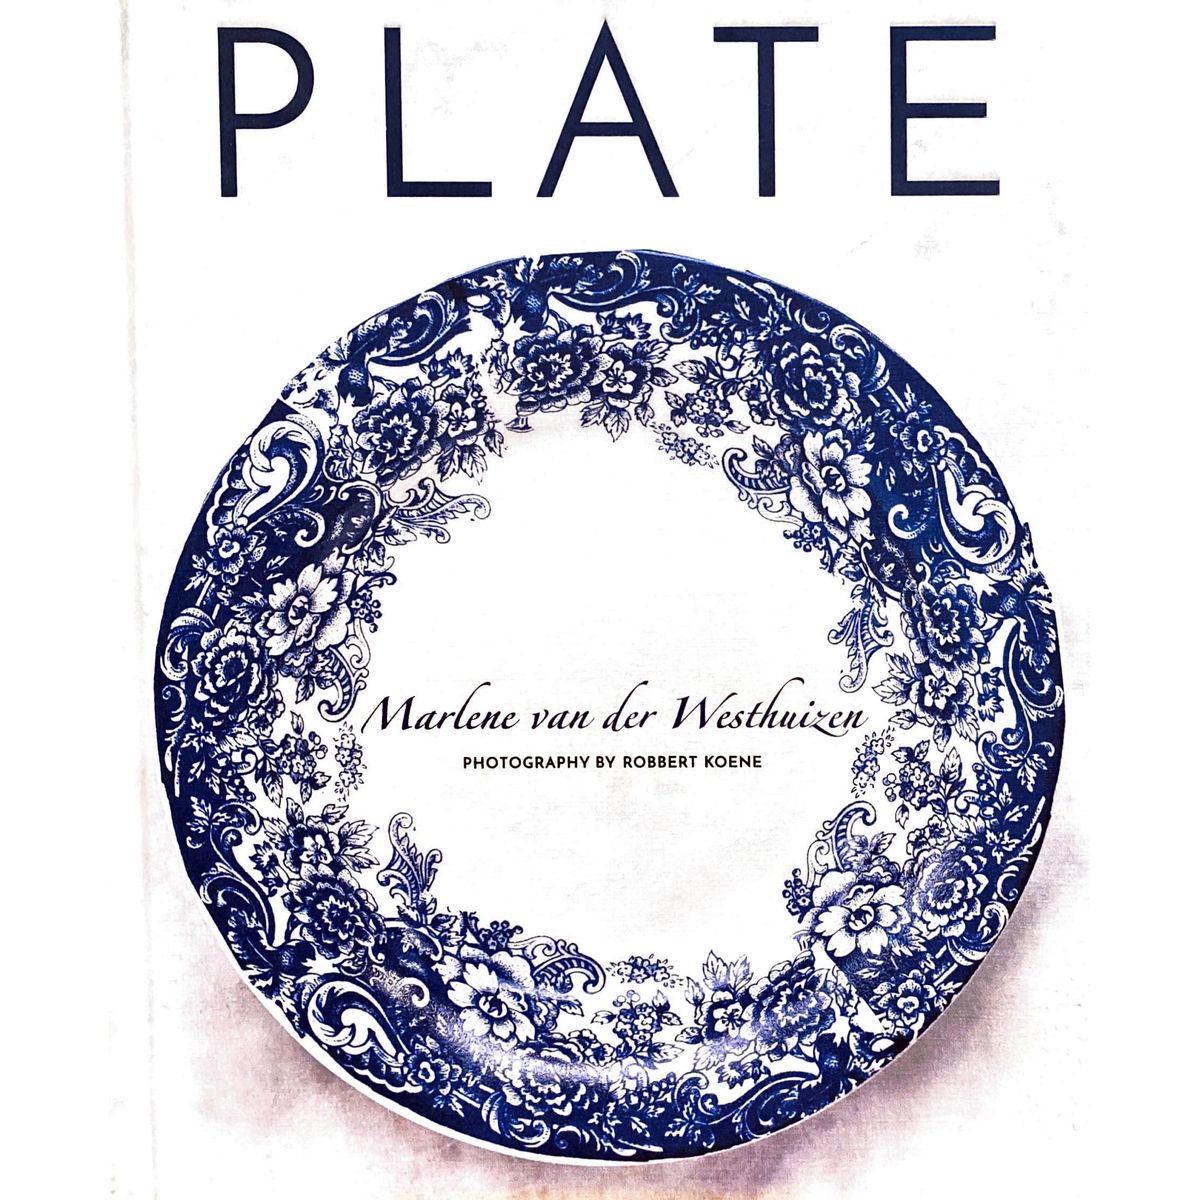 ISBN: 9781432309374 / 1432309374 - Plate by Marlene van der Westhuizen [2019]